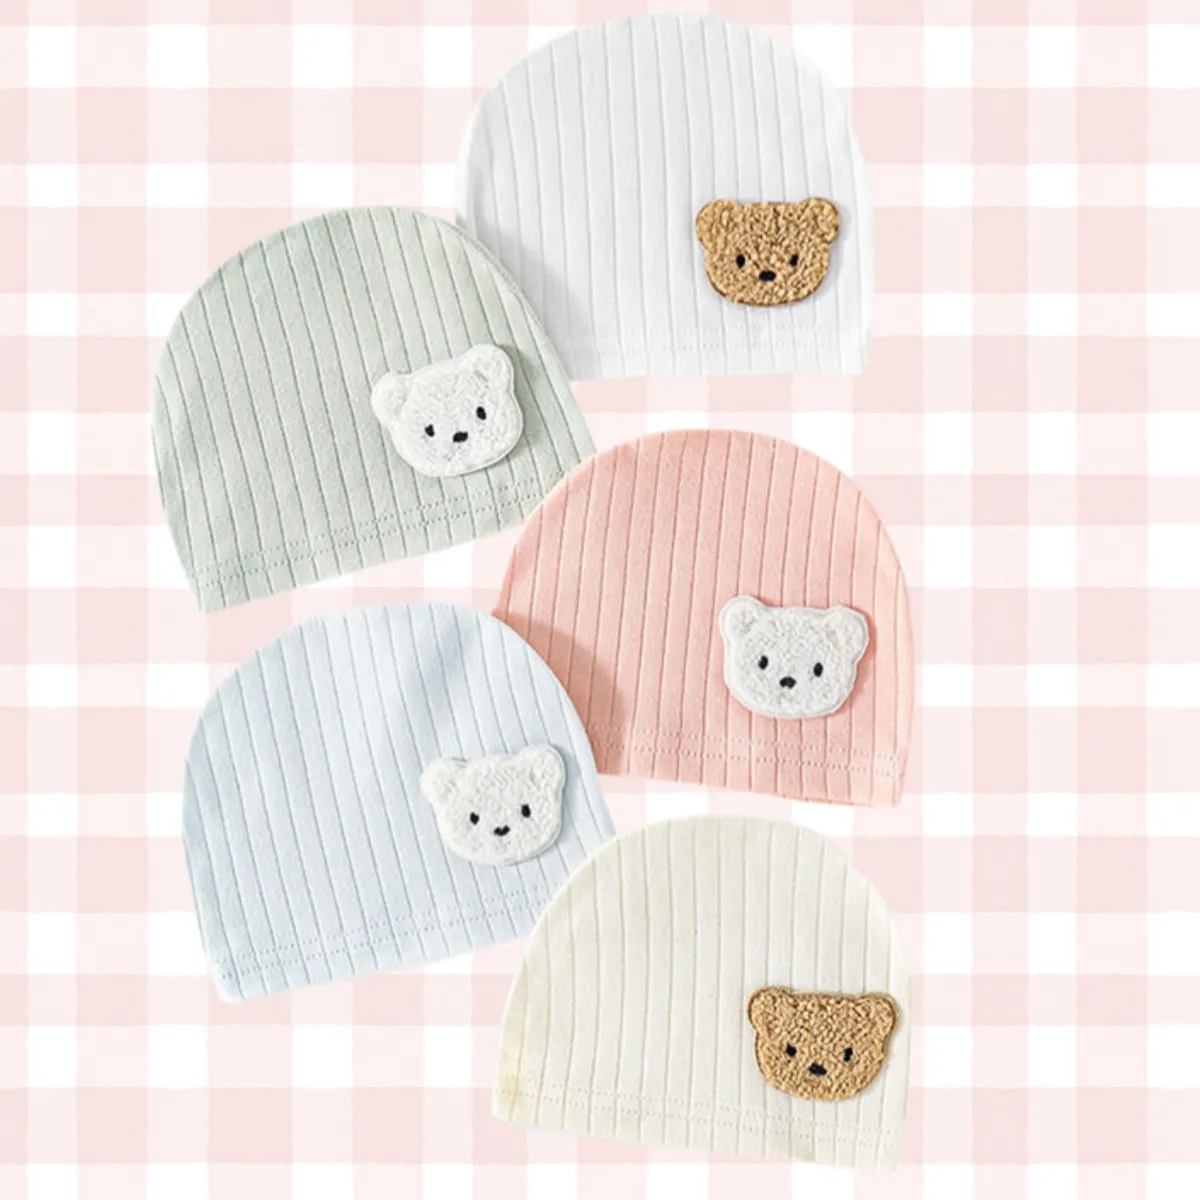 Nuevos gorros de bebé Bron estilo otoño algodón patrones lindos impresos cómodos gorros suaves gorros para bebés